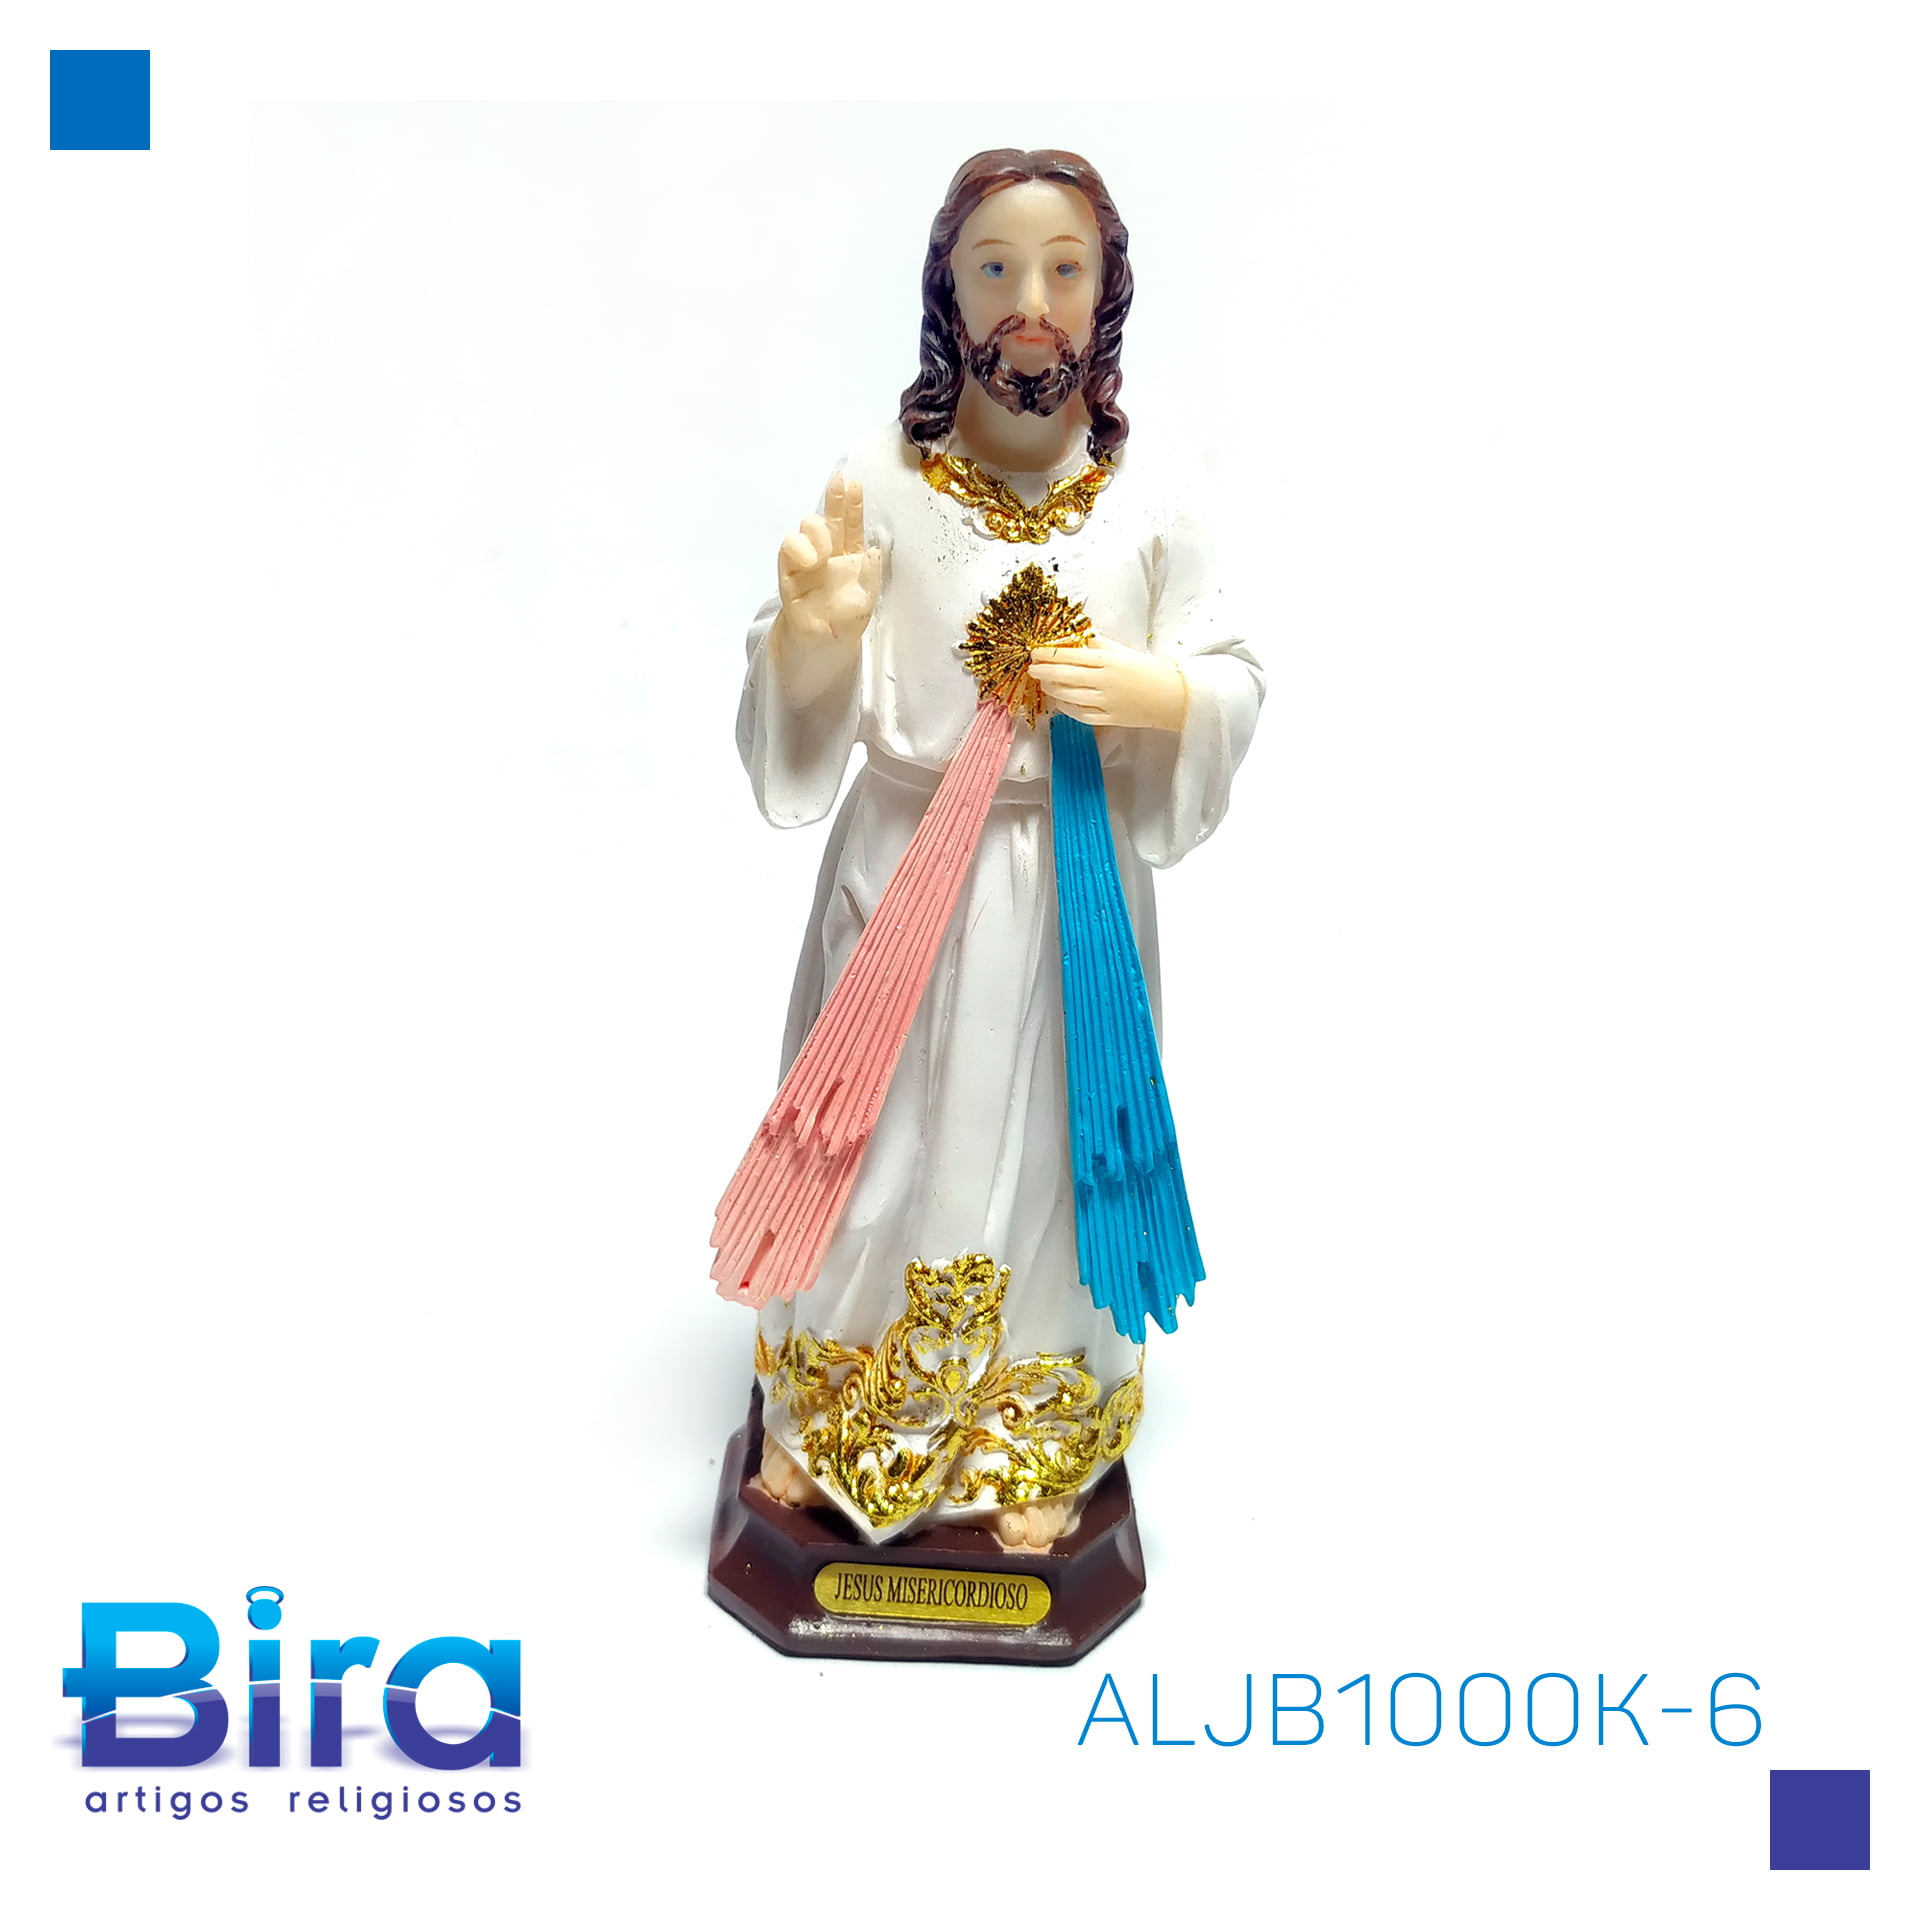 Bira Artigos Religiosos - JESUS MISERICORDIOSO  DE RESINA DE 15 CM - CÓD. ALJB1000K-6